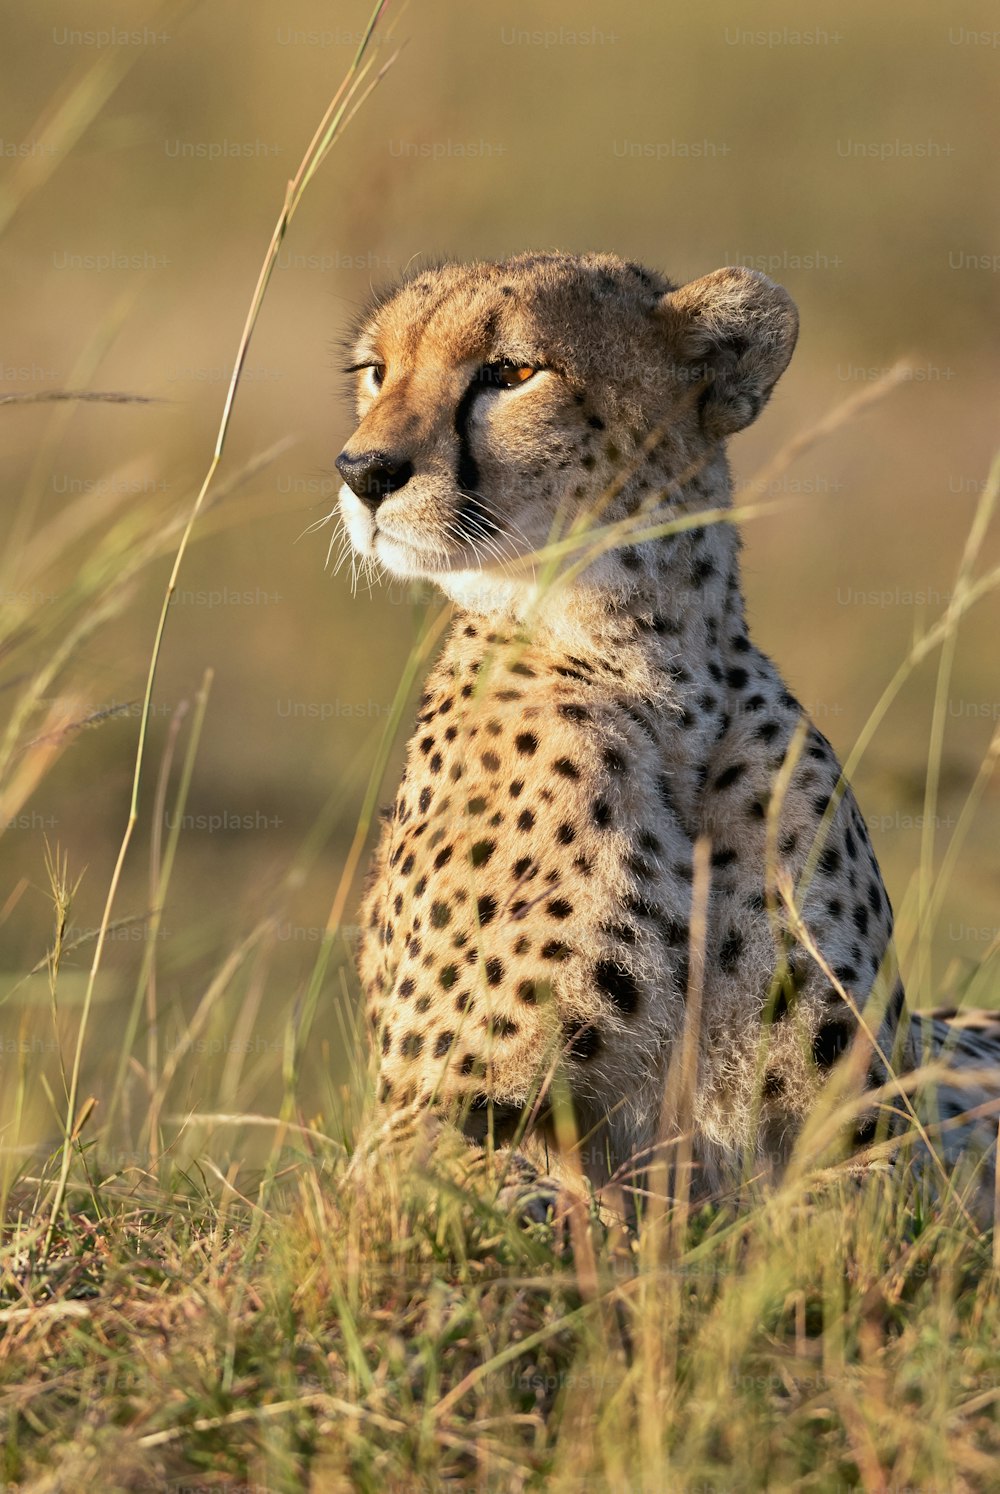 Ritratto verticale di un bellissimo ghepardo che guarda verso l'orizzonte disteso nell'erba